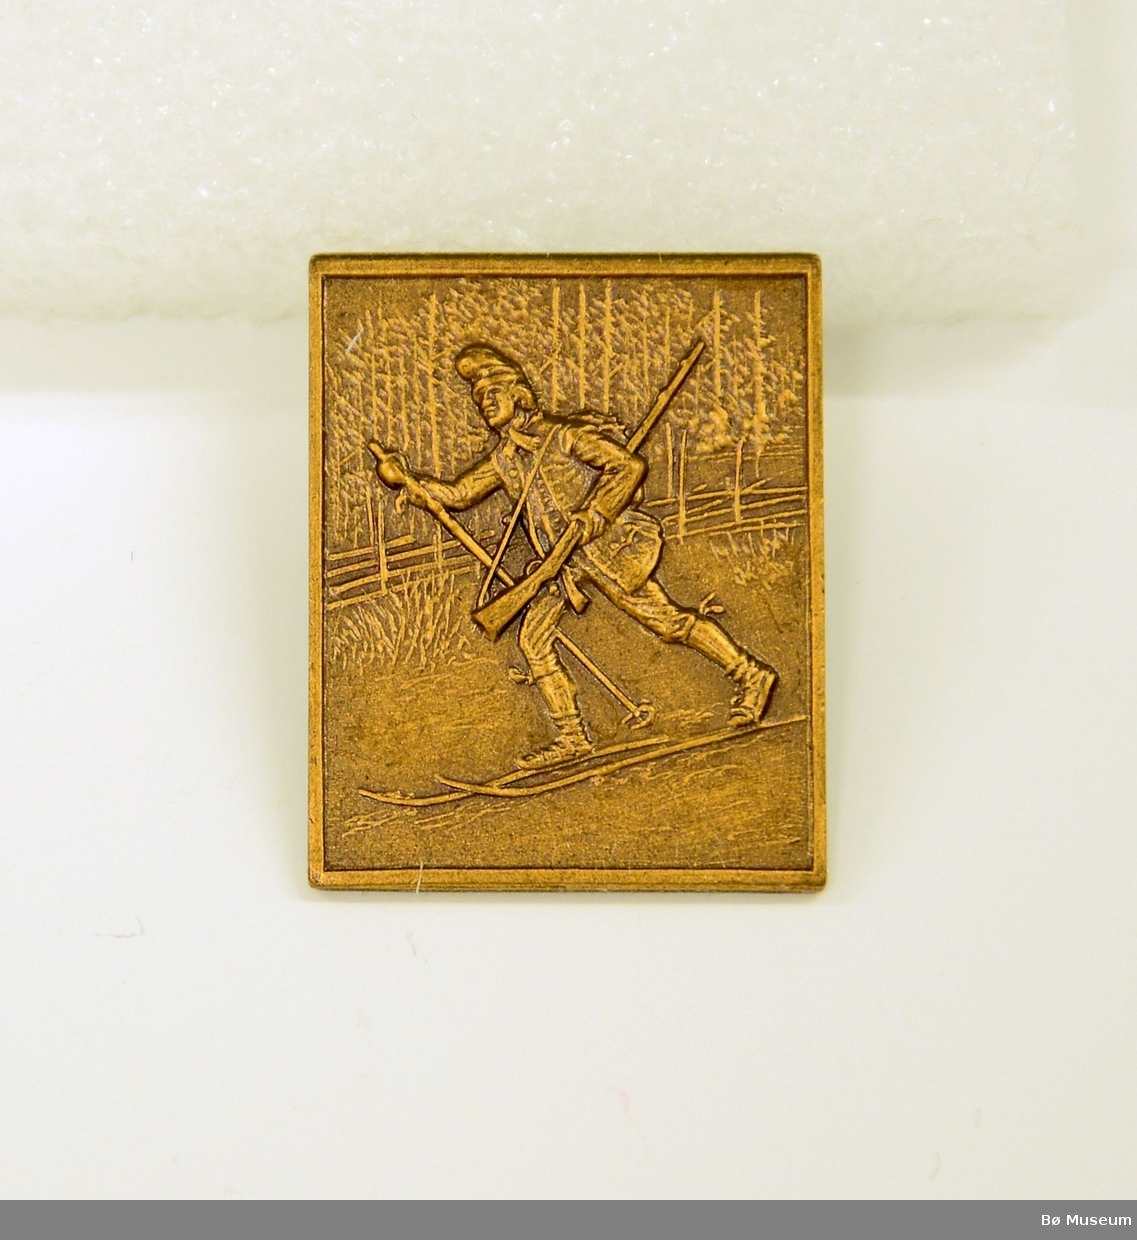 Pin - uten innskrift:
I messing/kobber - bilde av en mann på ski med gevær - Jo Gjende? Med nål bakpå.